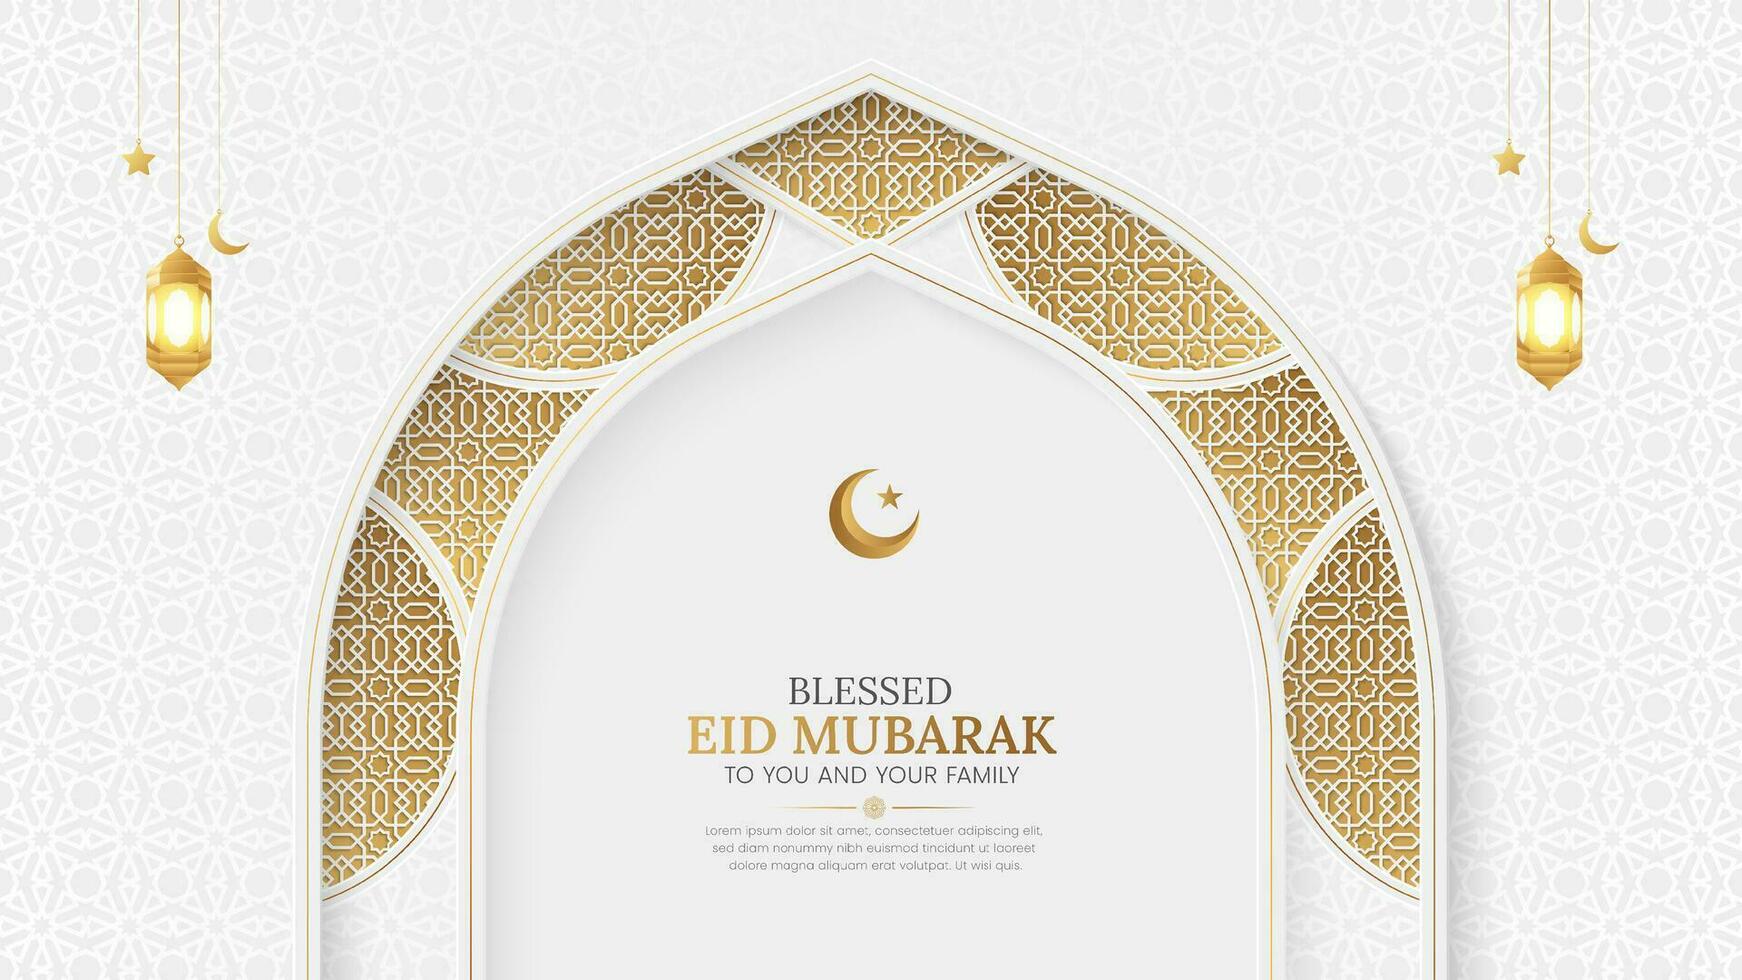 eid mubarak islamic dekorativ båge bakgrund med arabicum mönster och lyktor vektor